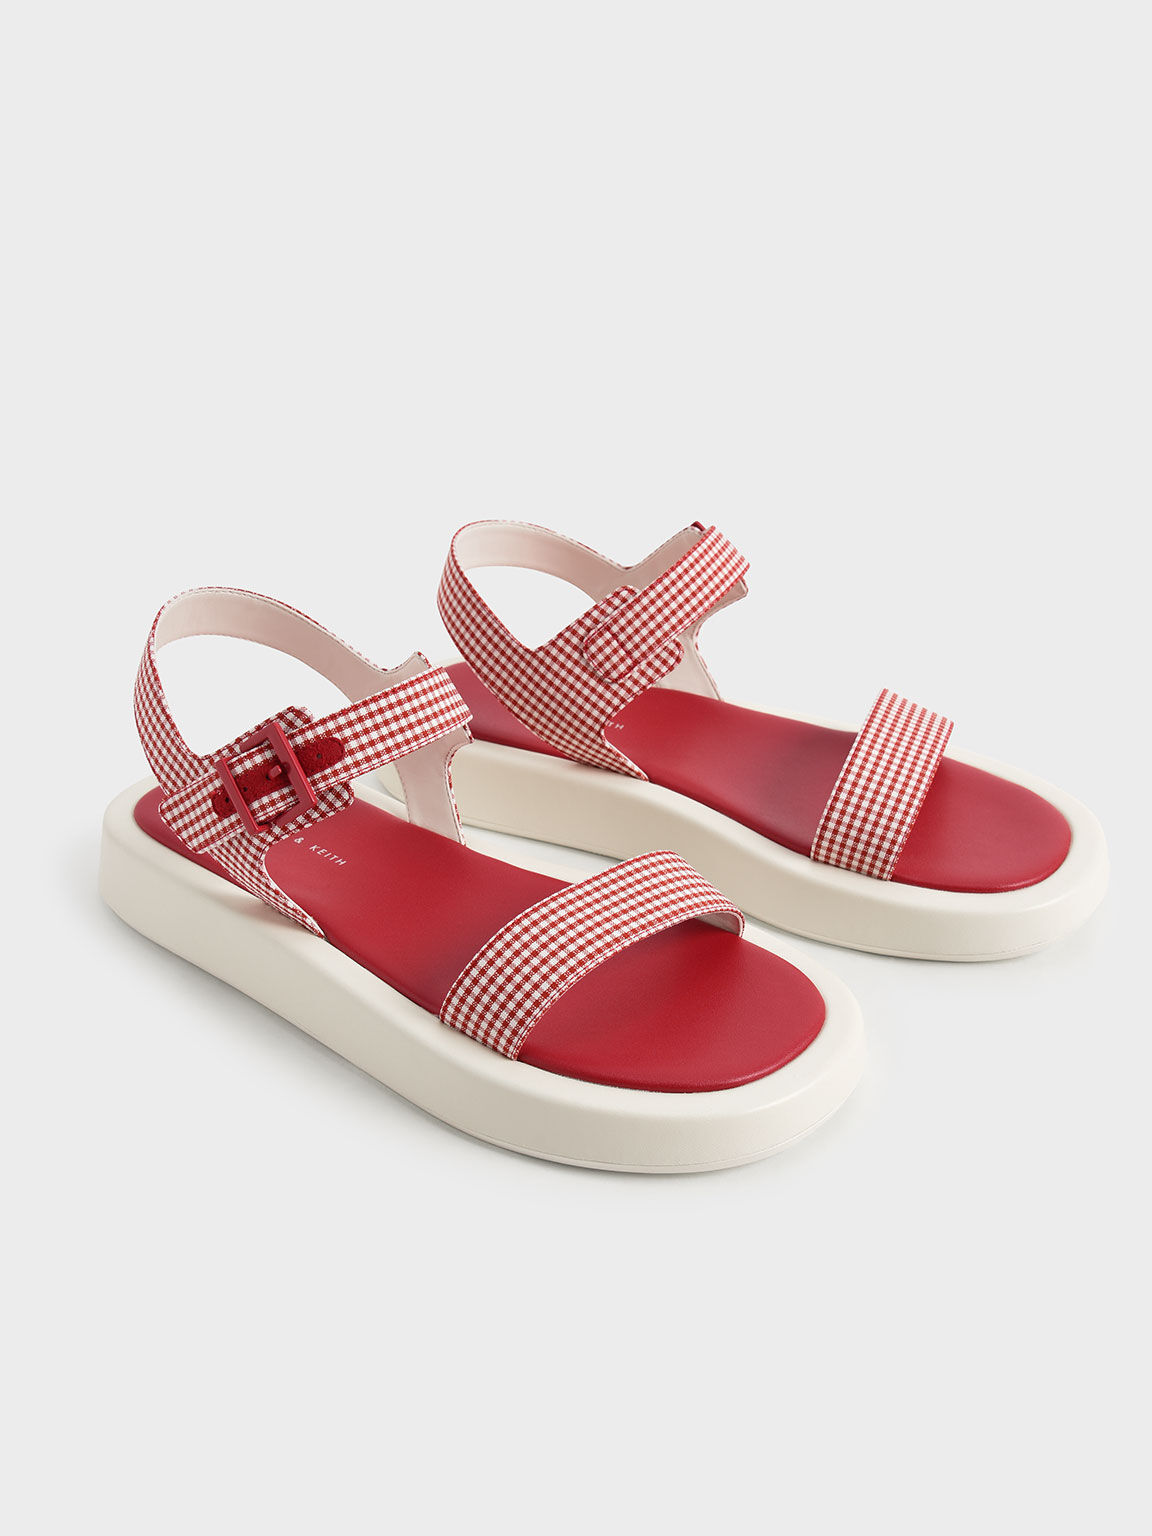 Check-Print Buckled Ankle Strap Flatform Sandals, Red, hi-res